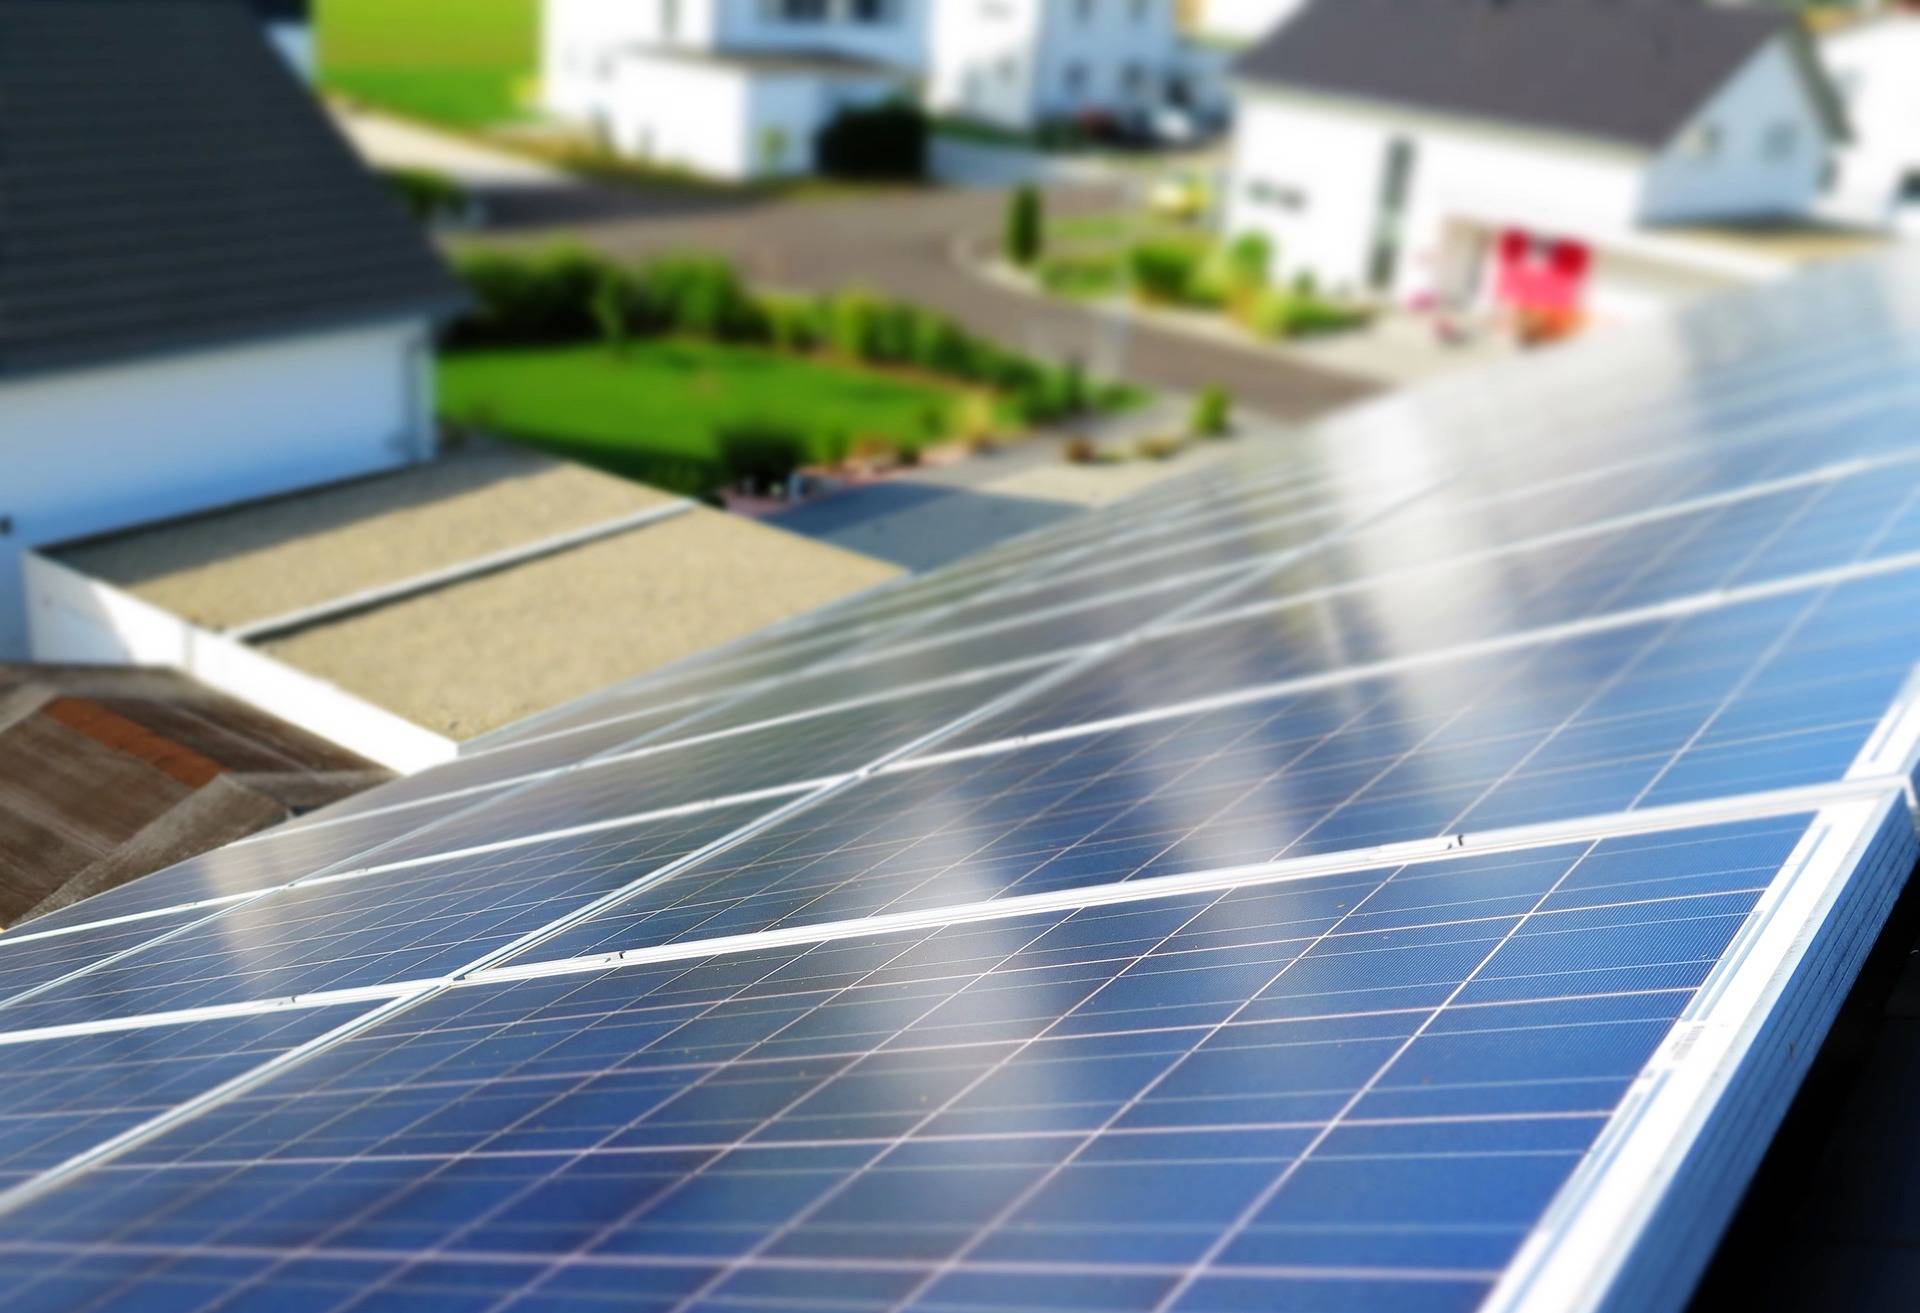 Land erleichtert Ausbau erneuerbarer Energien im Eigenheim: Mehr Möglichkeiten für Wärmepumpen und Solaranlagen